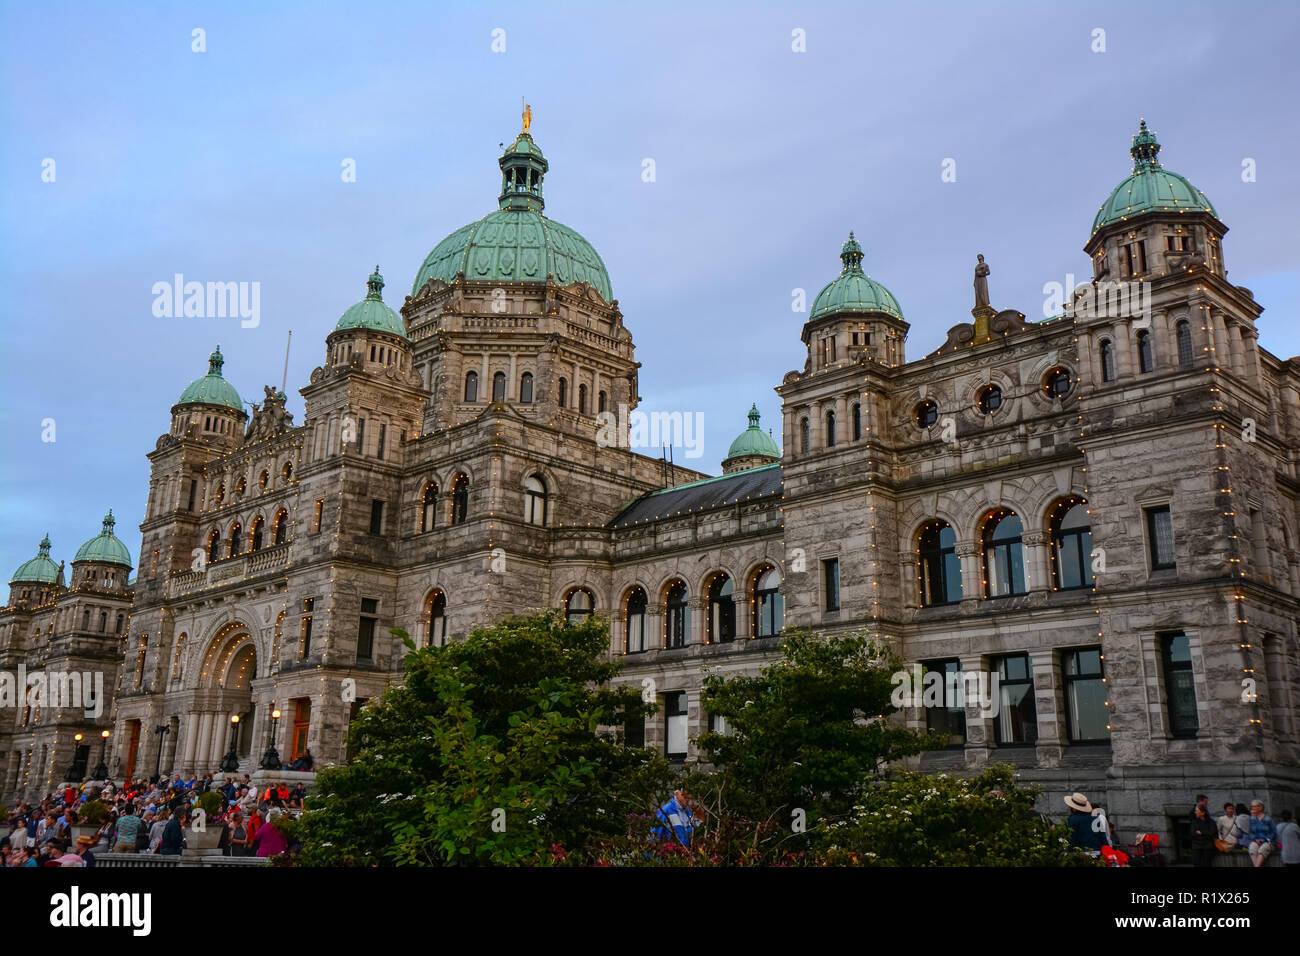 Édifice de l'Assemblée législative de Victoria (C.-B.), capitale de l'île de Vancouver en Colombie-Britannique, Canada Banque D'Images